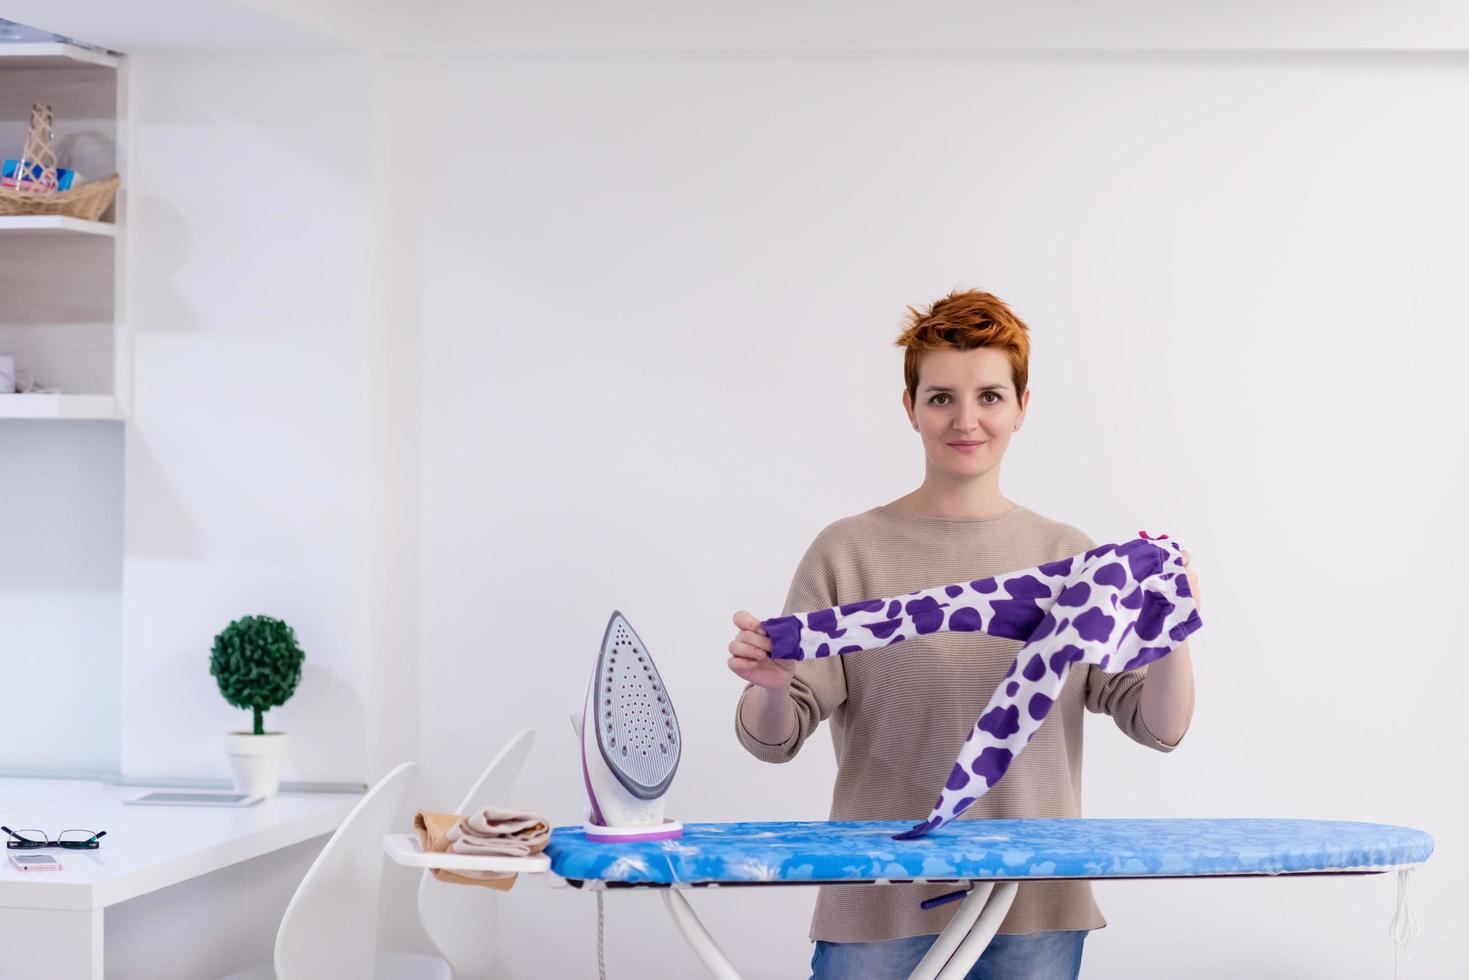 mujer pelirroja planchando ropa en casa foto